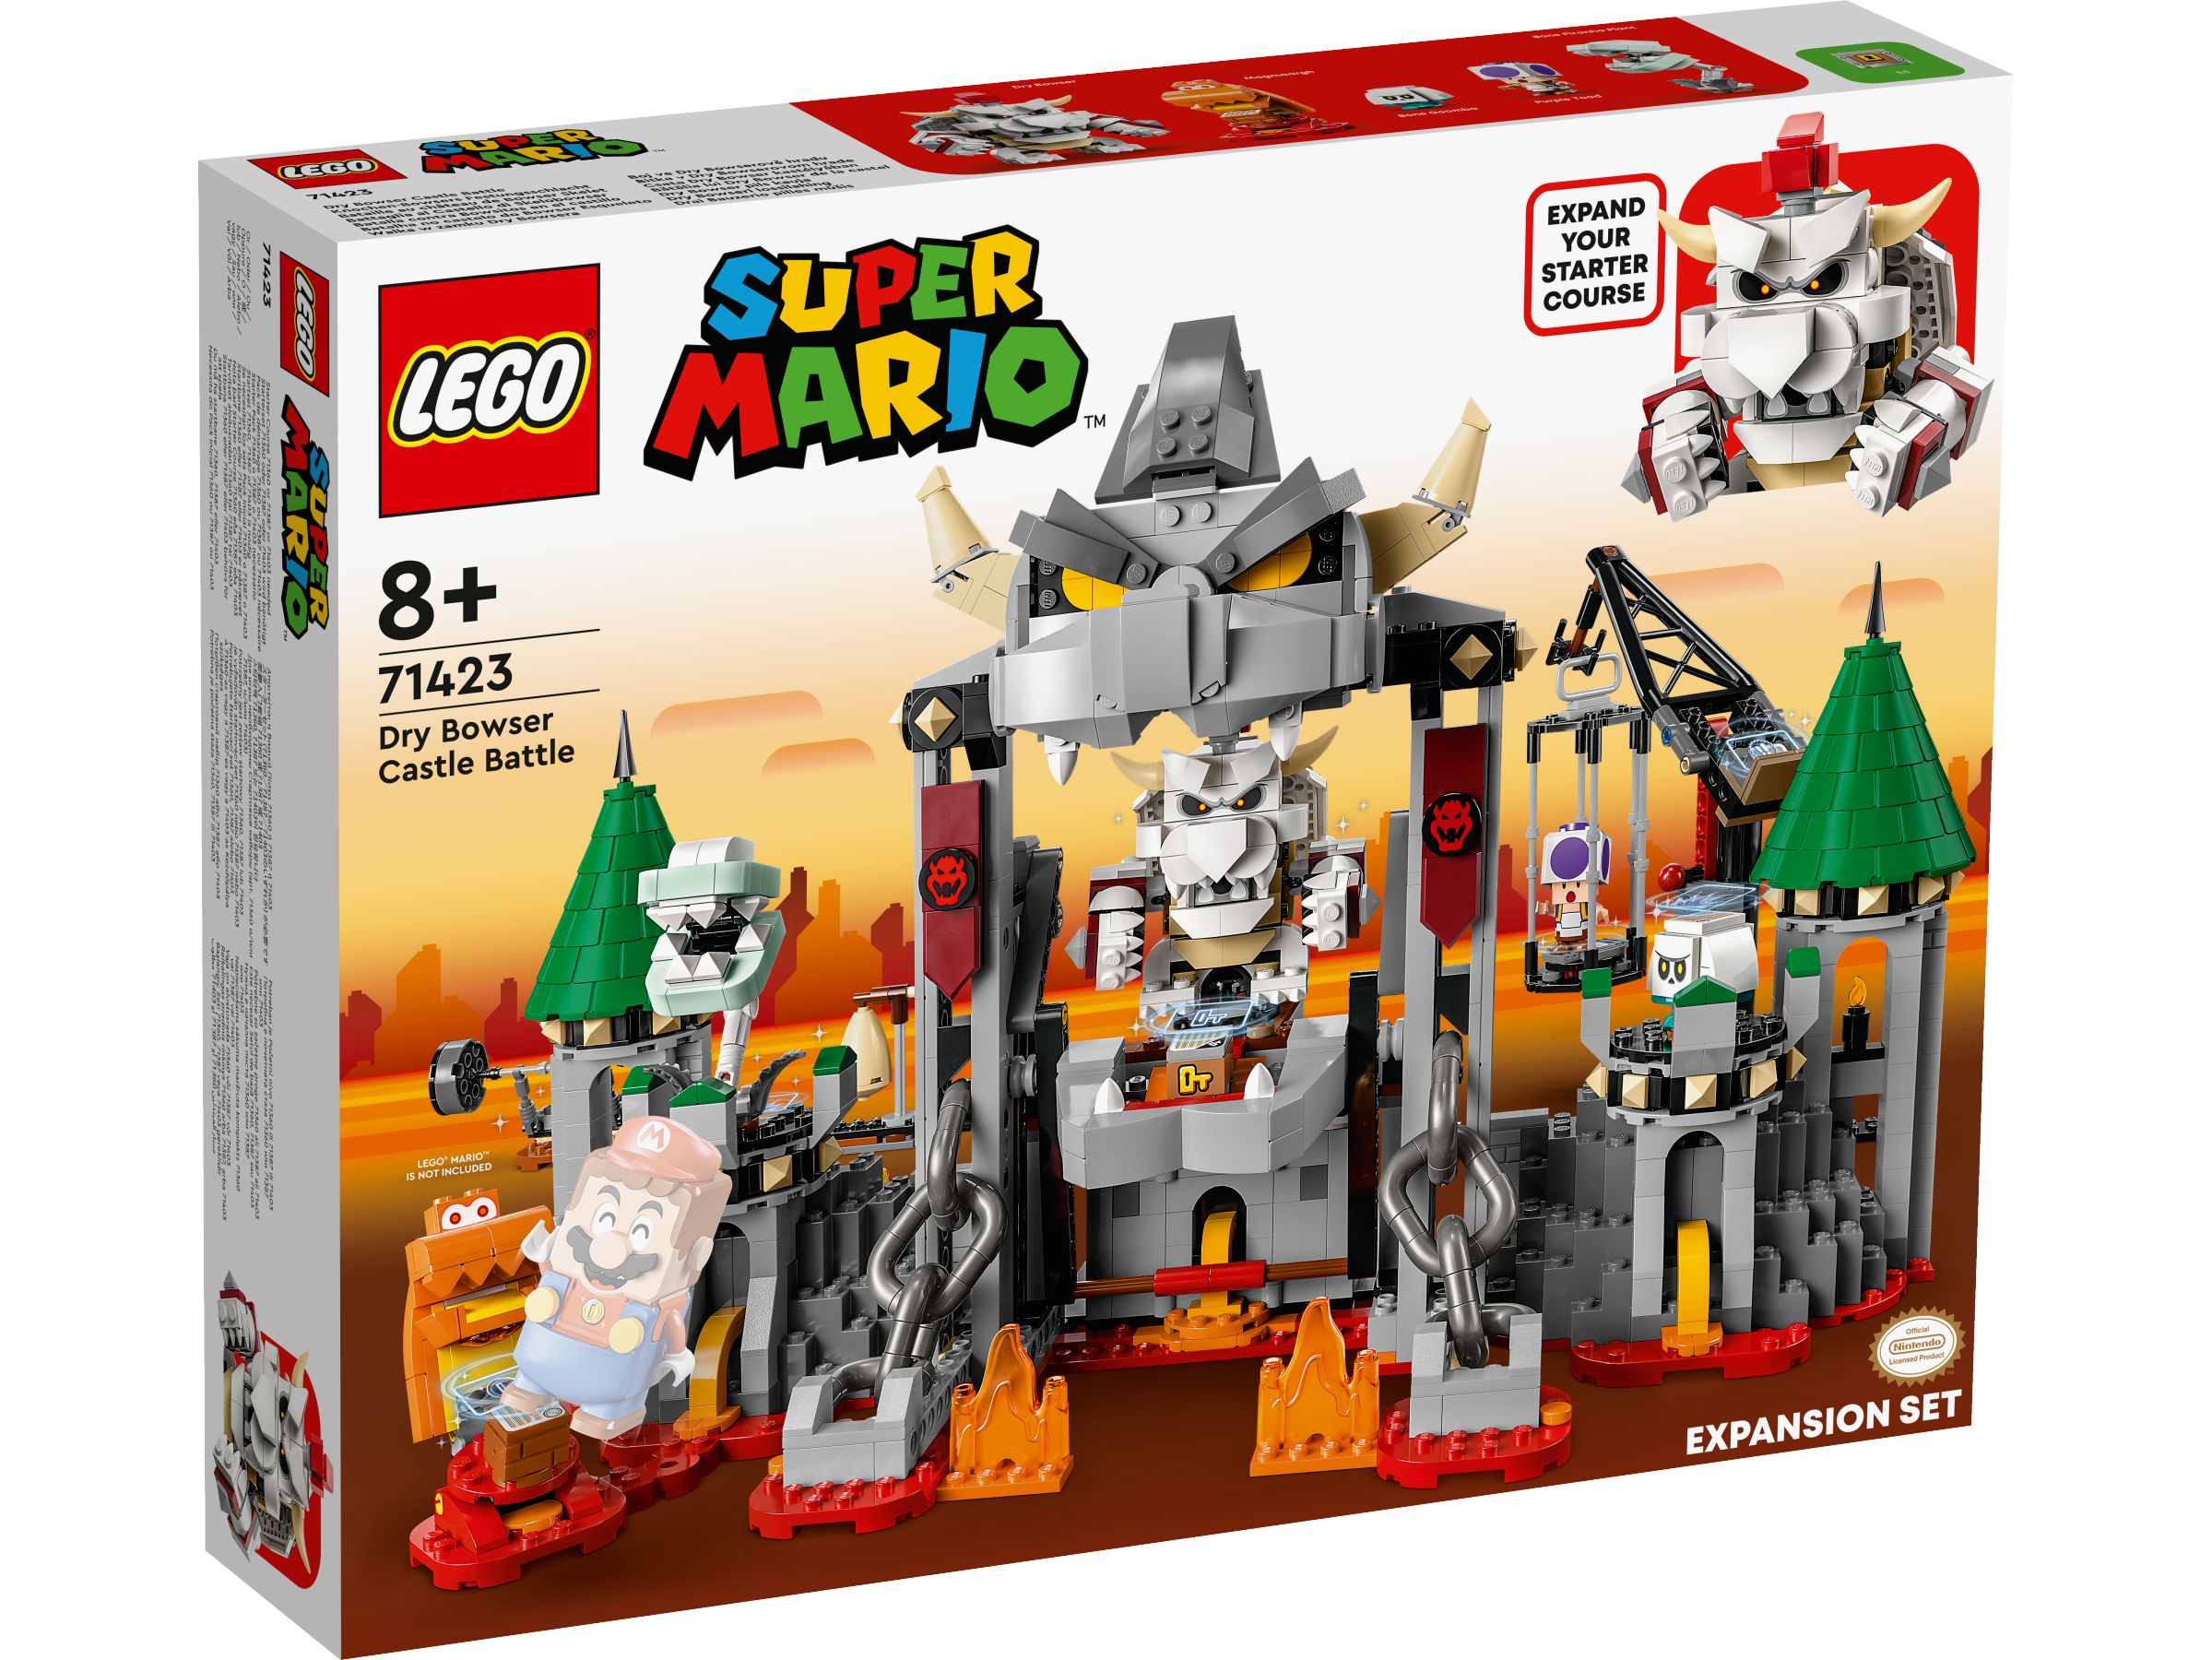 LEGO Super Mario 71423 Knochen-Bowsers Festungsschlacht – Erweiterungsset LEGO_71423_Box1_v29.jpg